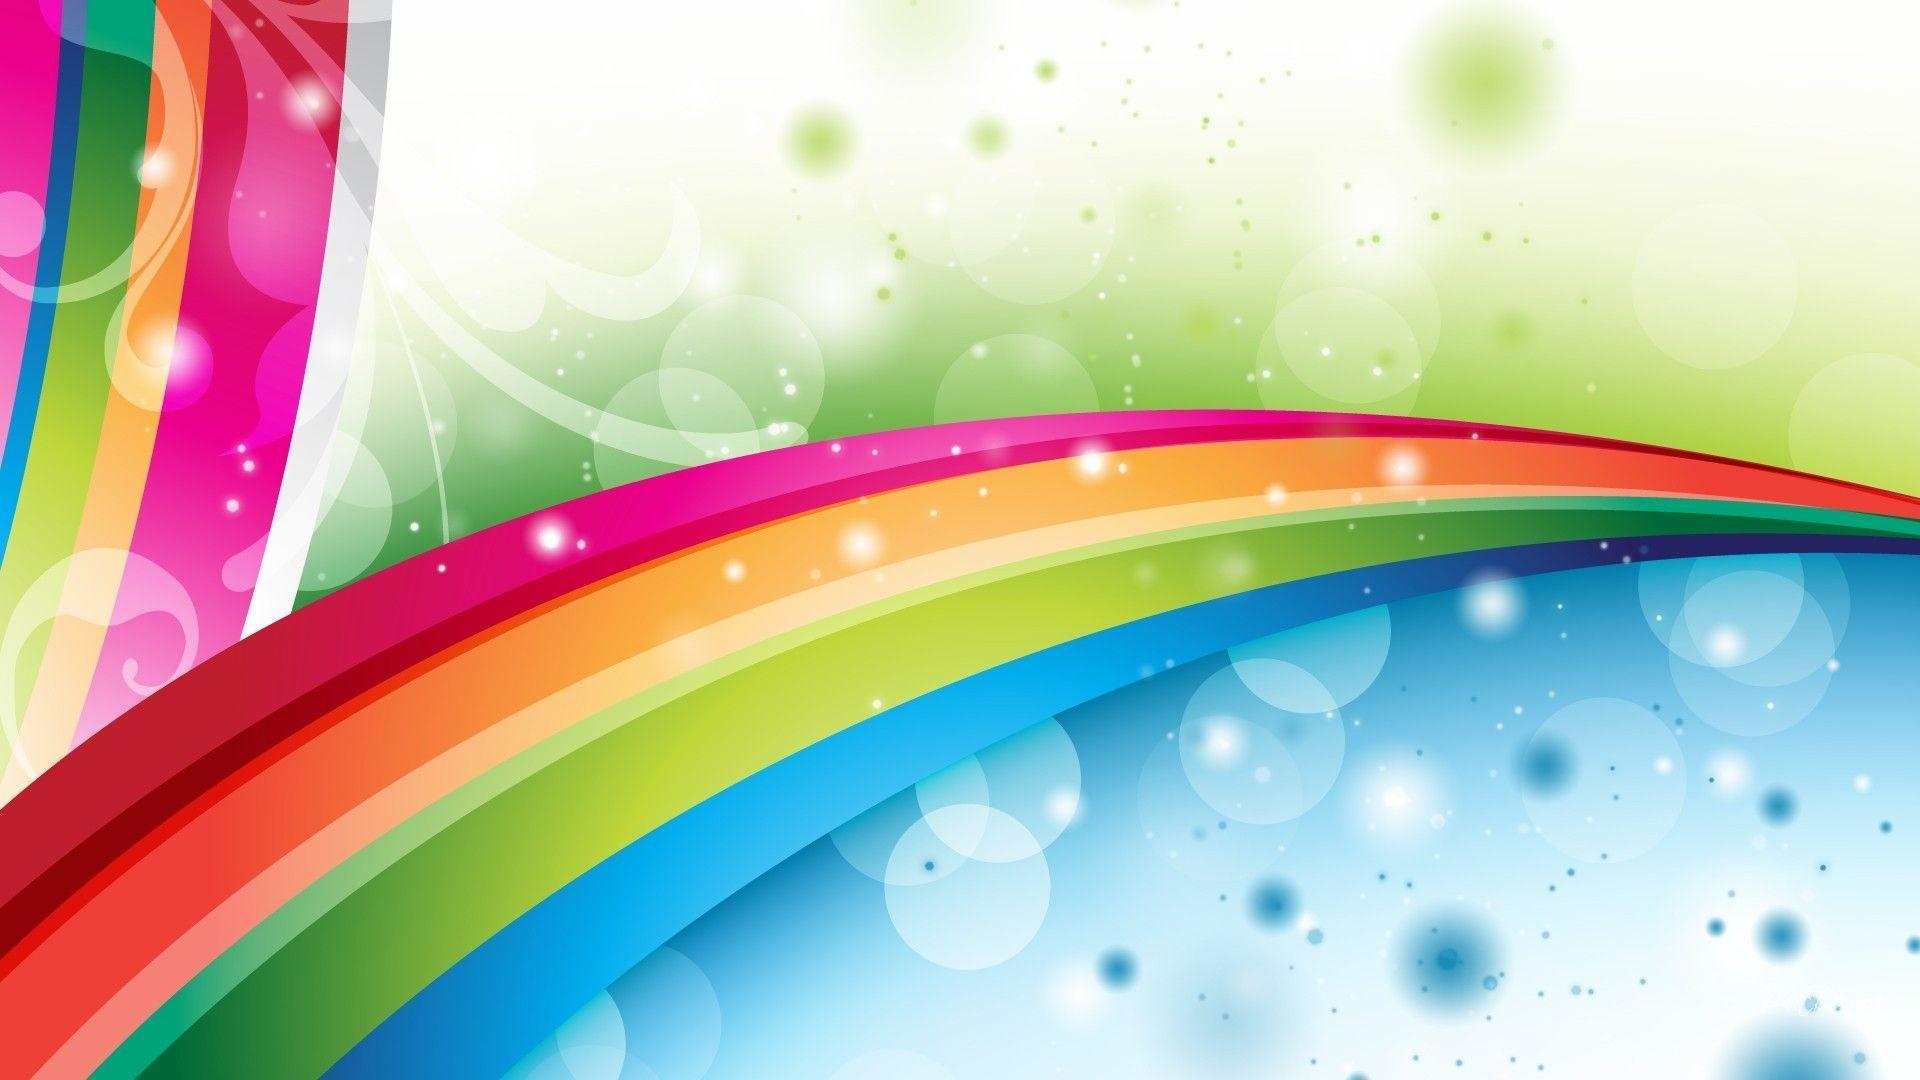 Abstract Rainbow Wallpaper HD 26 6809 Image HD Wallpaper